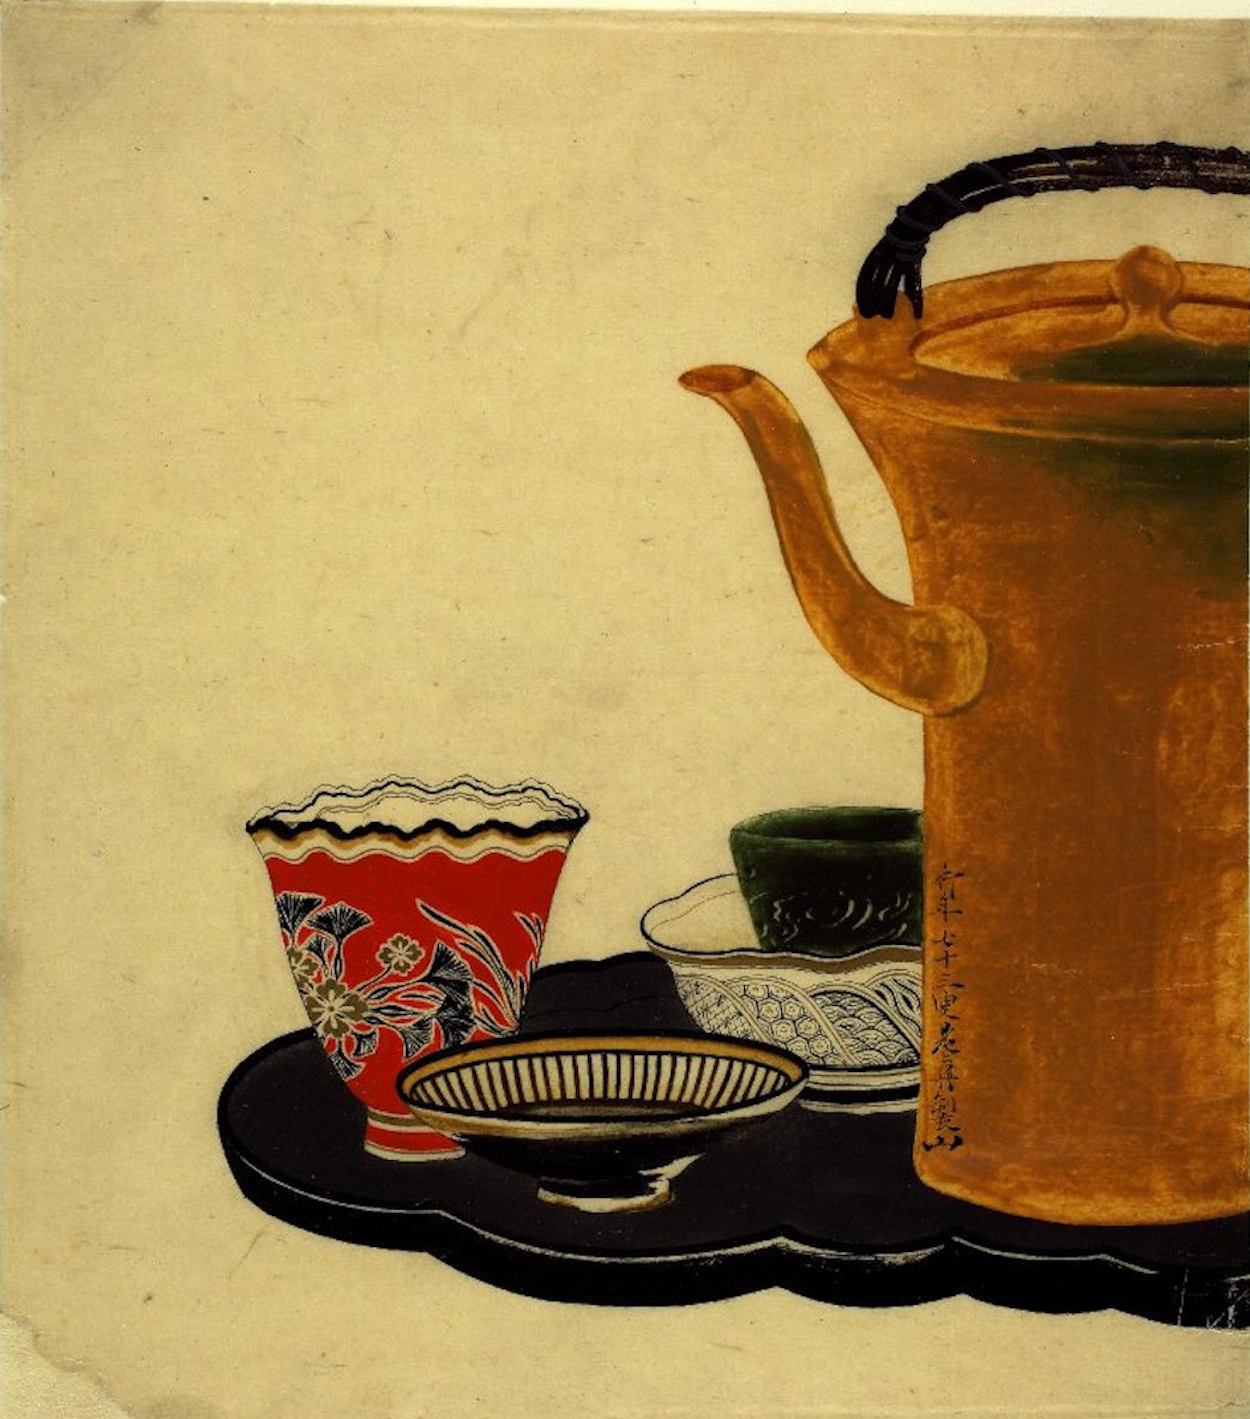 托盤上的茶具 by Shibata Zeshin - 1879 